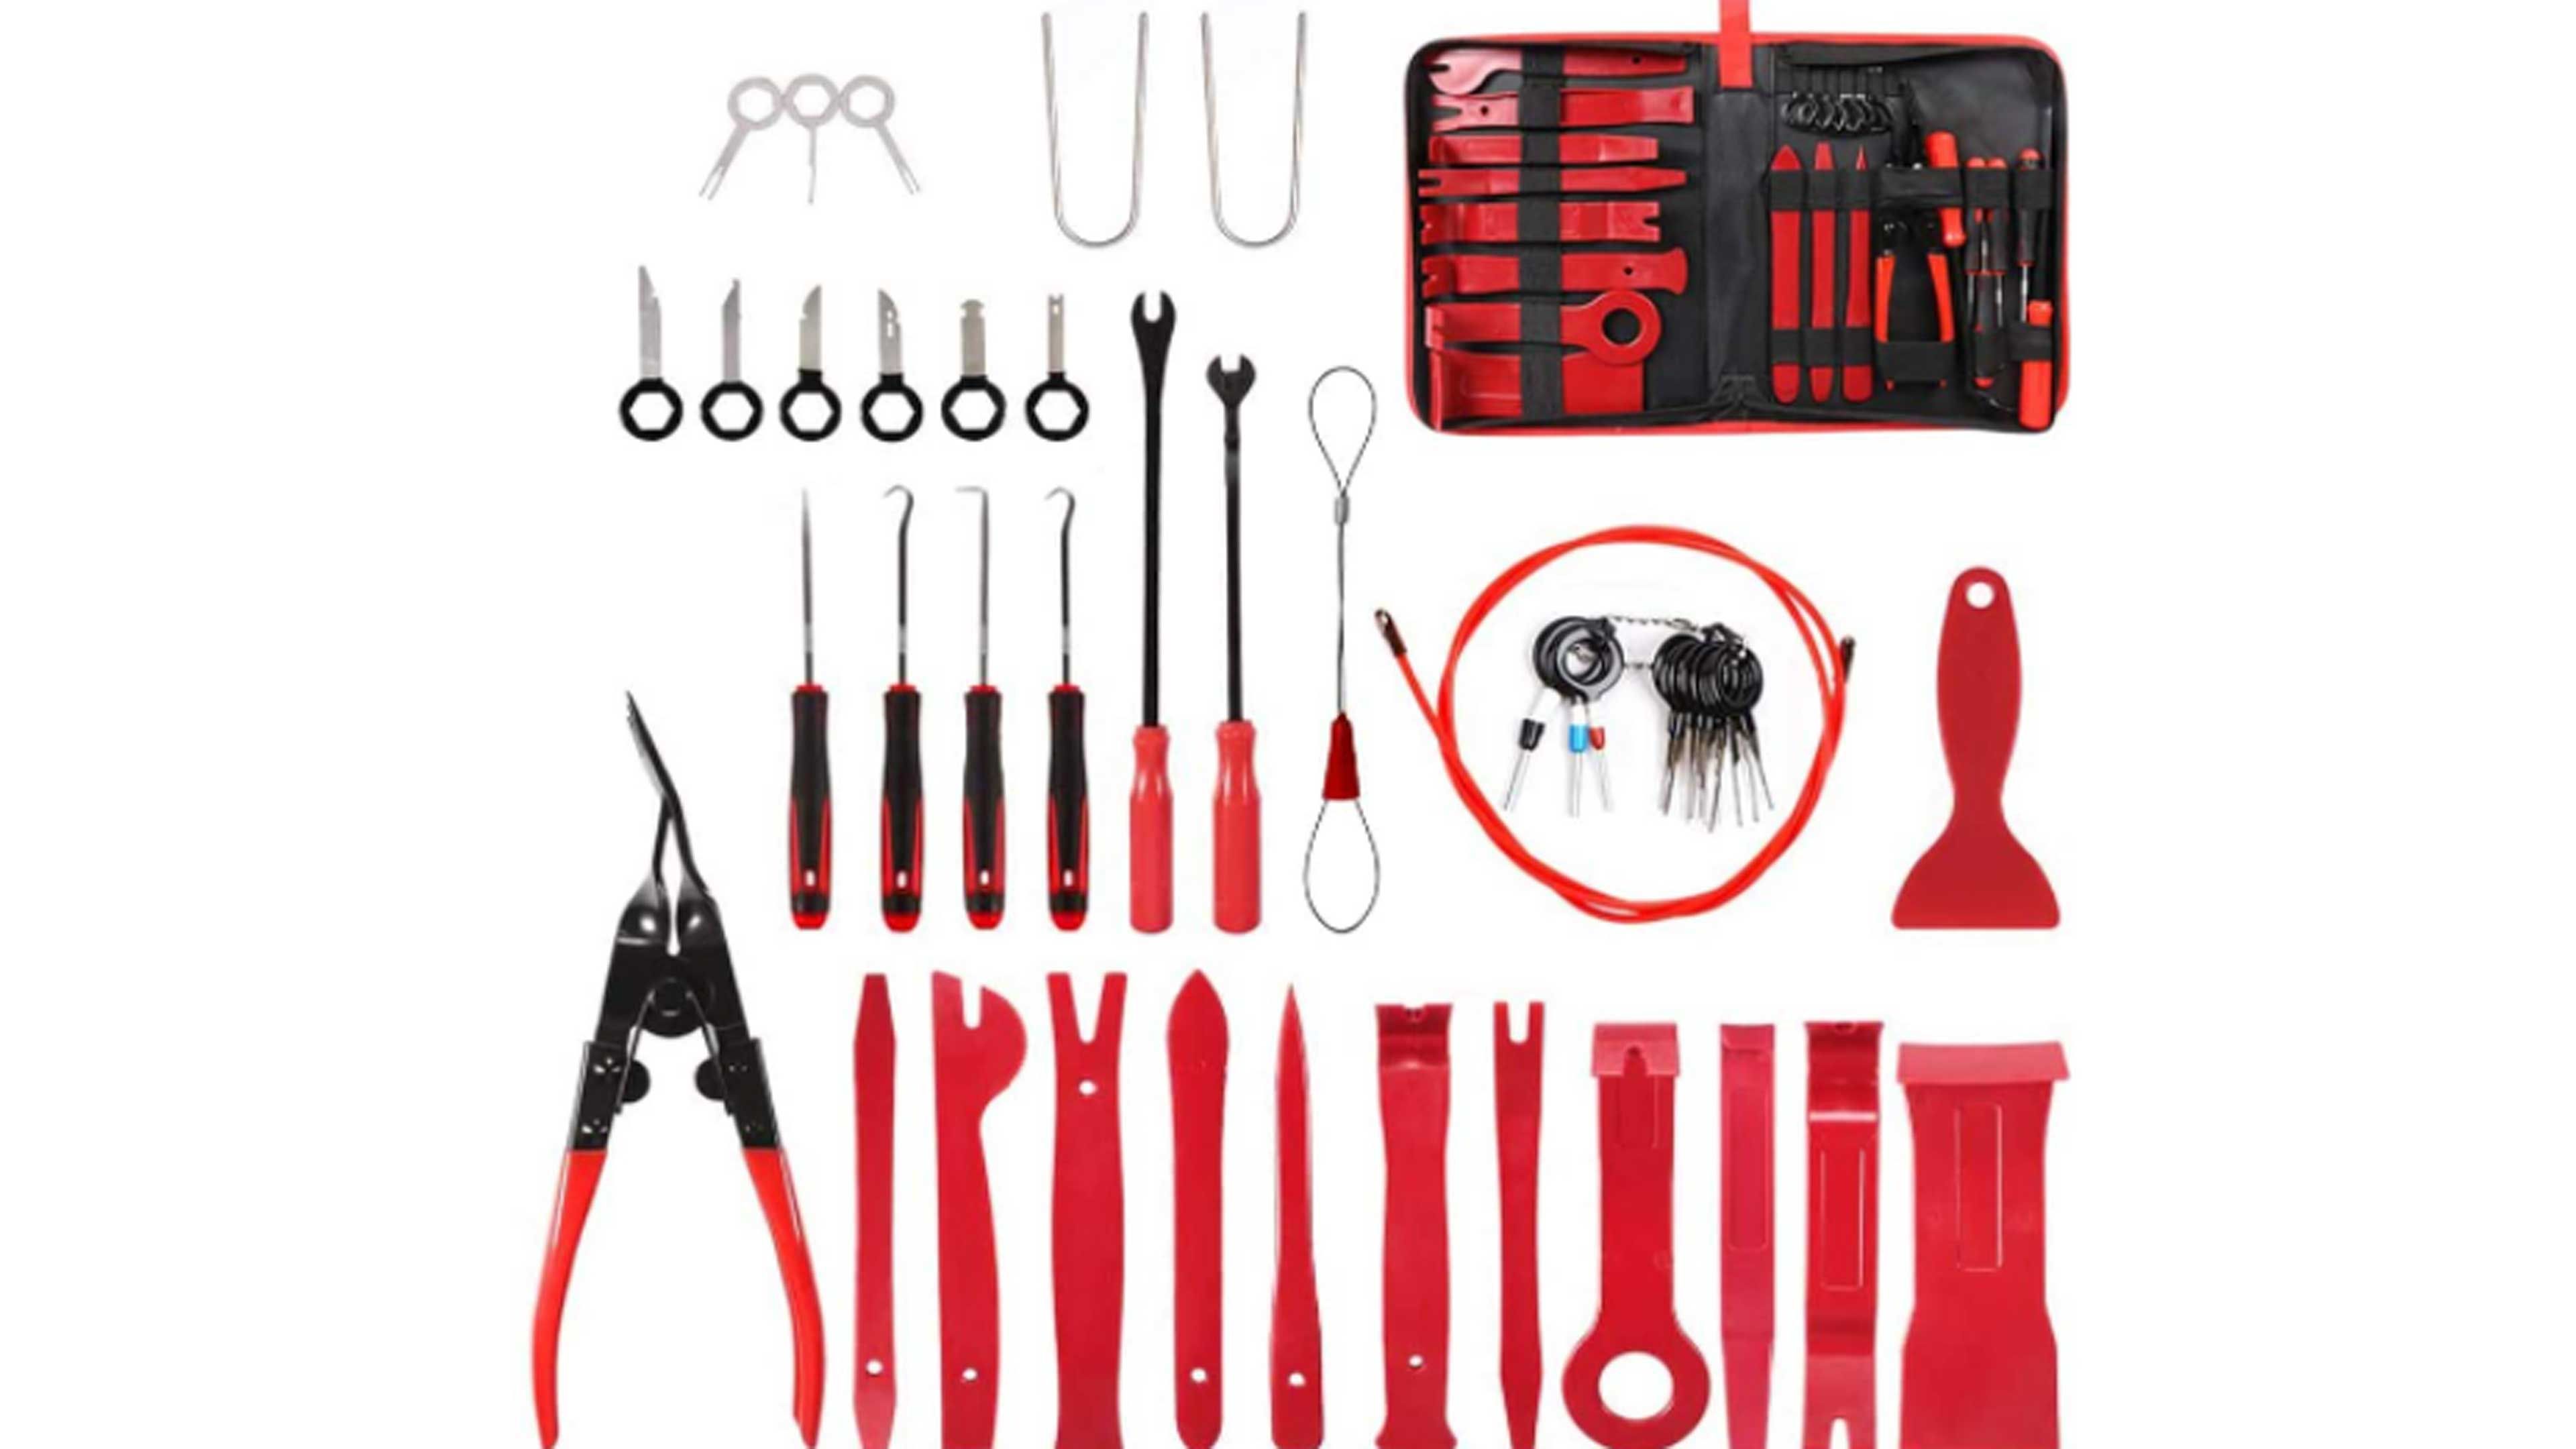 Caja de herramientas para el coche Bst4u a la venta en Amazon